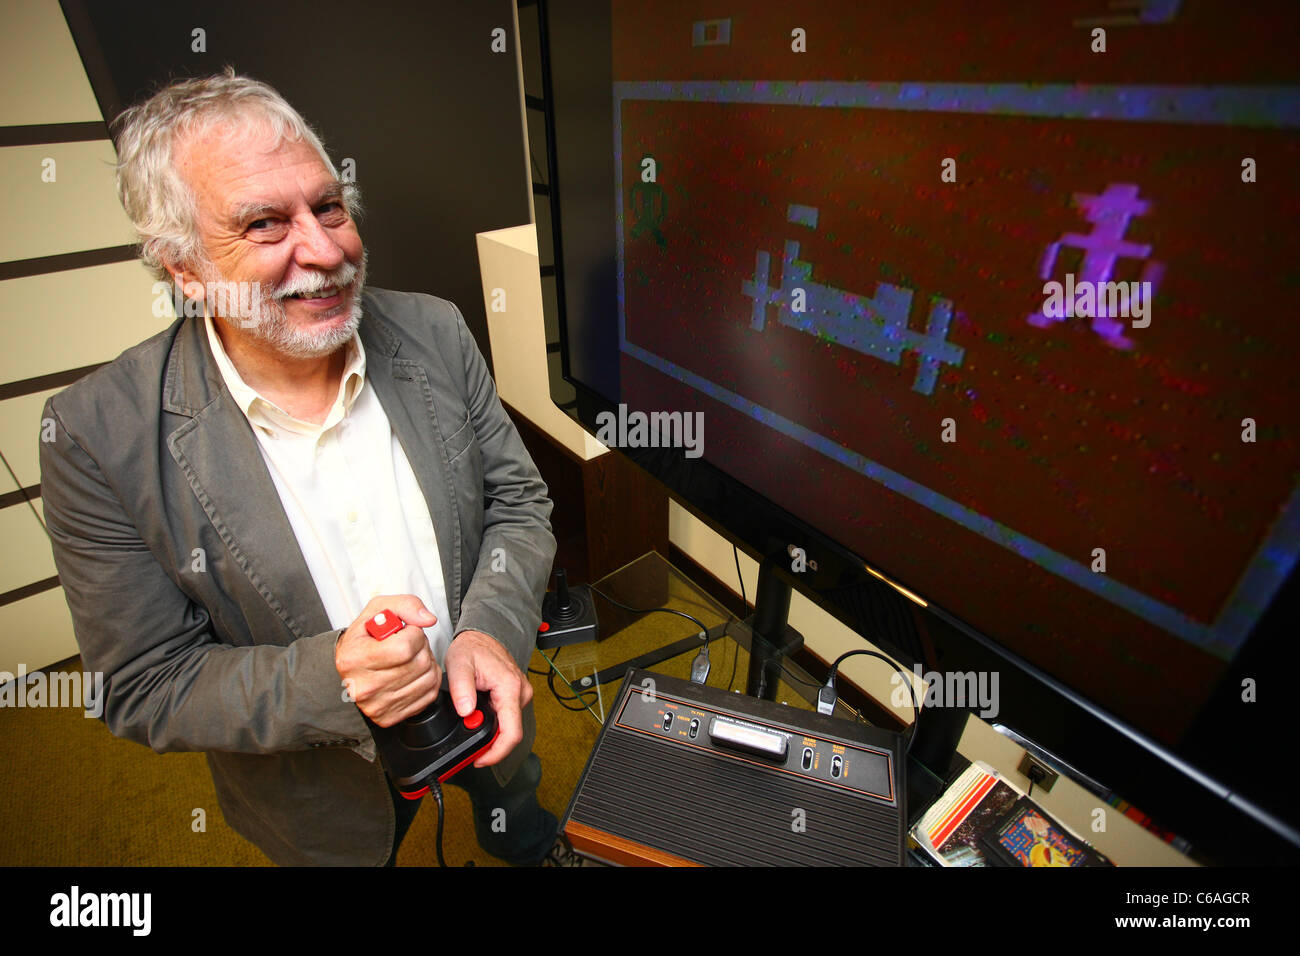 Atari fondatore Nolan Bushnell giocando con un Atari 2600 console per video game durante un colloquio presso Intercontinental Hotel. Foto Stock